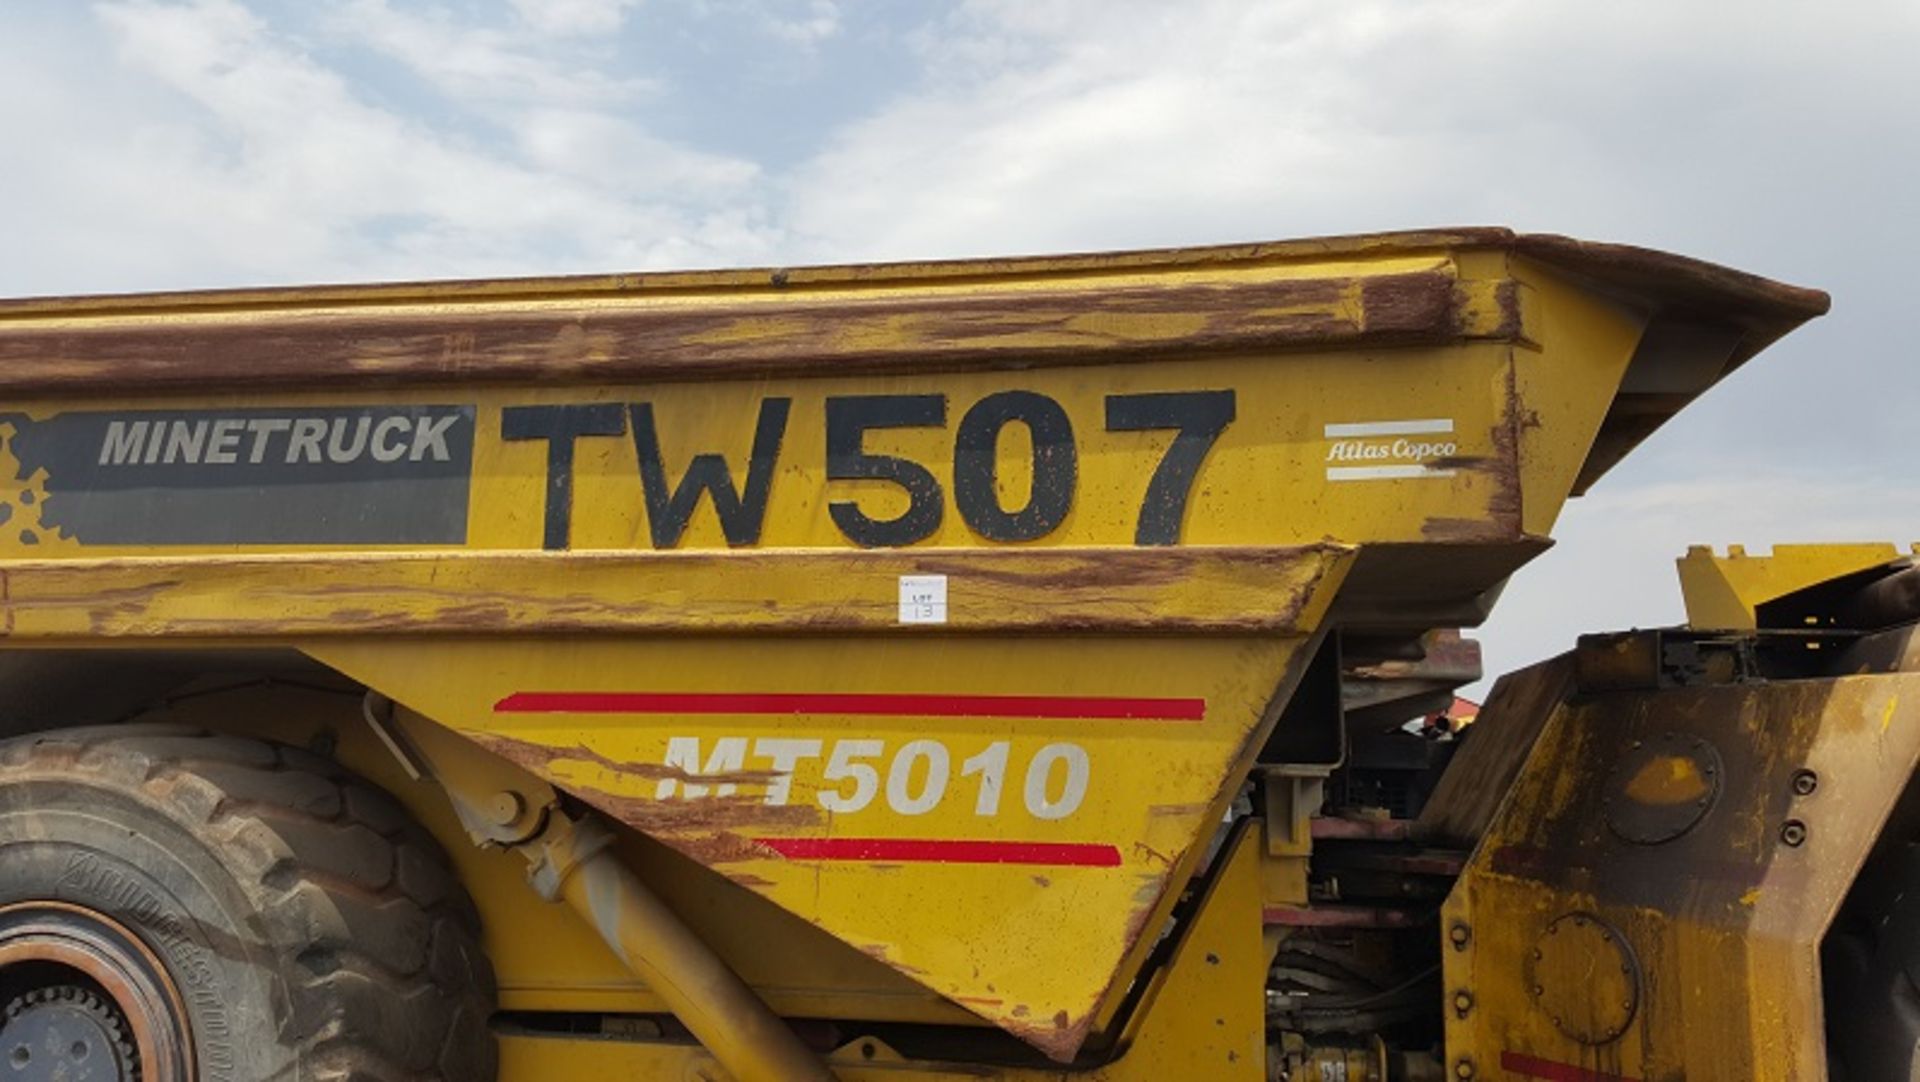 Atlas Copco Wagner MT5010 Underground Dump Truck (TW507) - Image 3 of 4